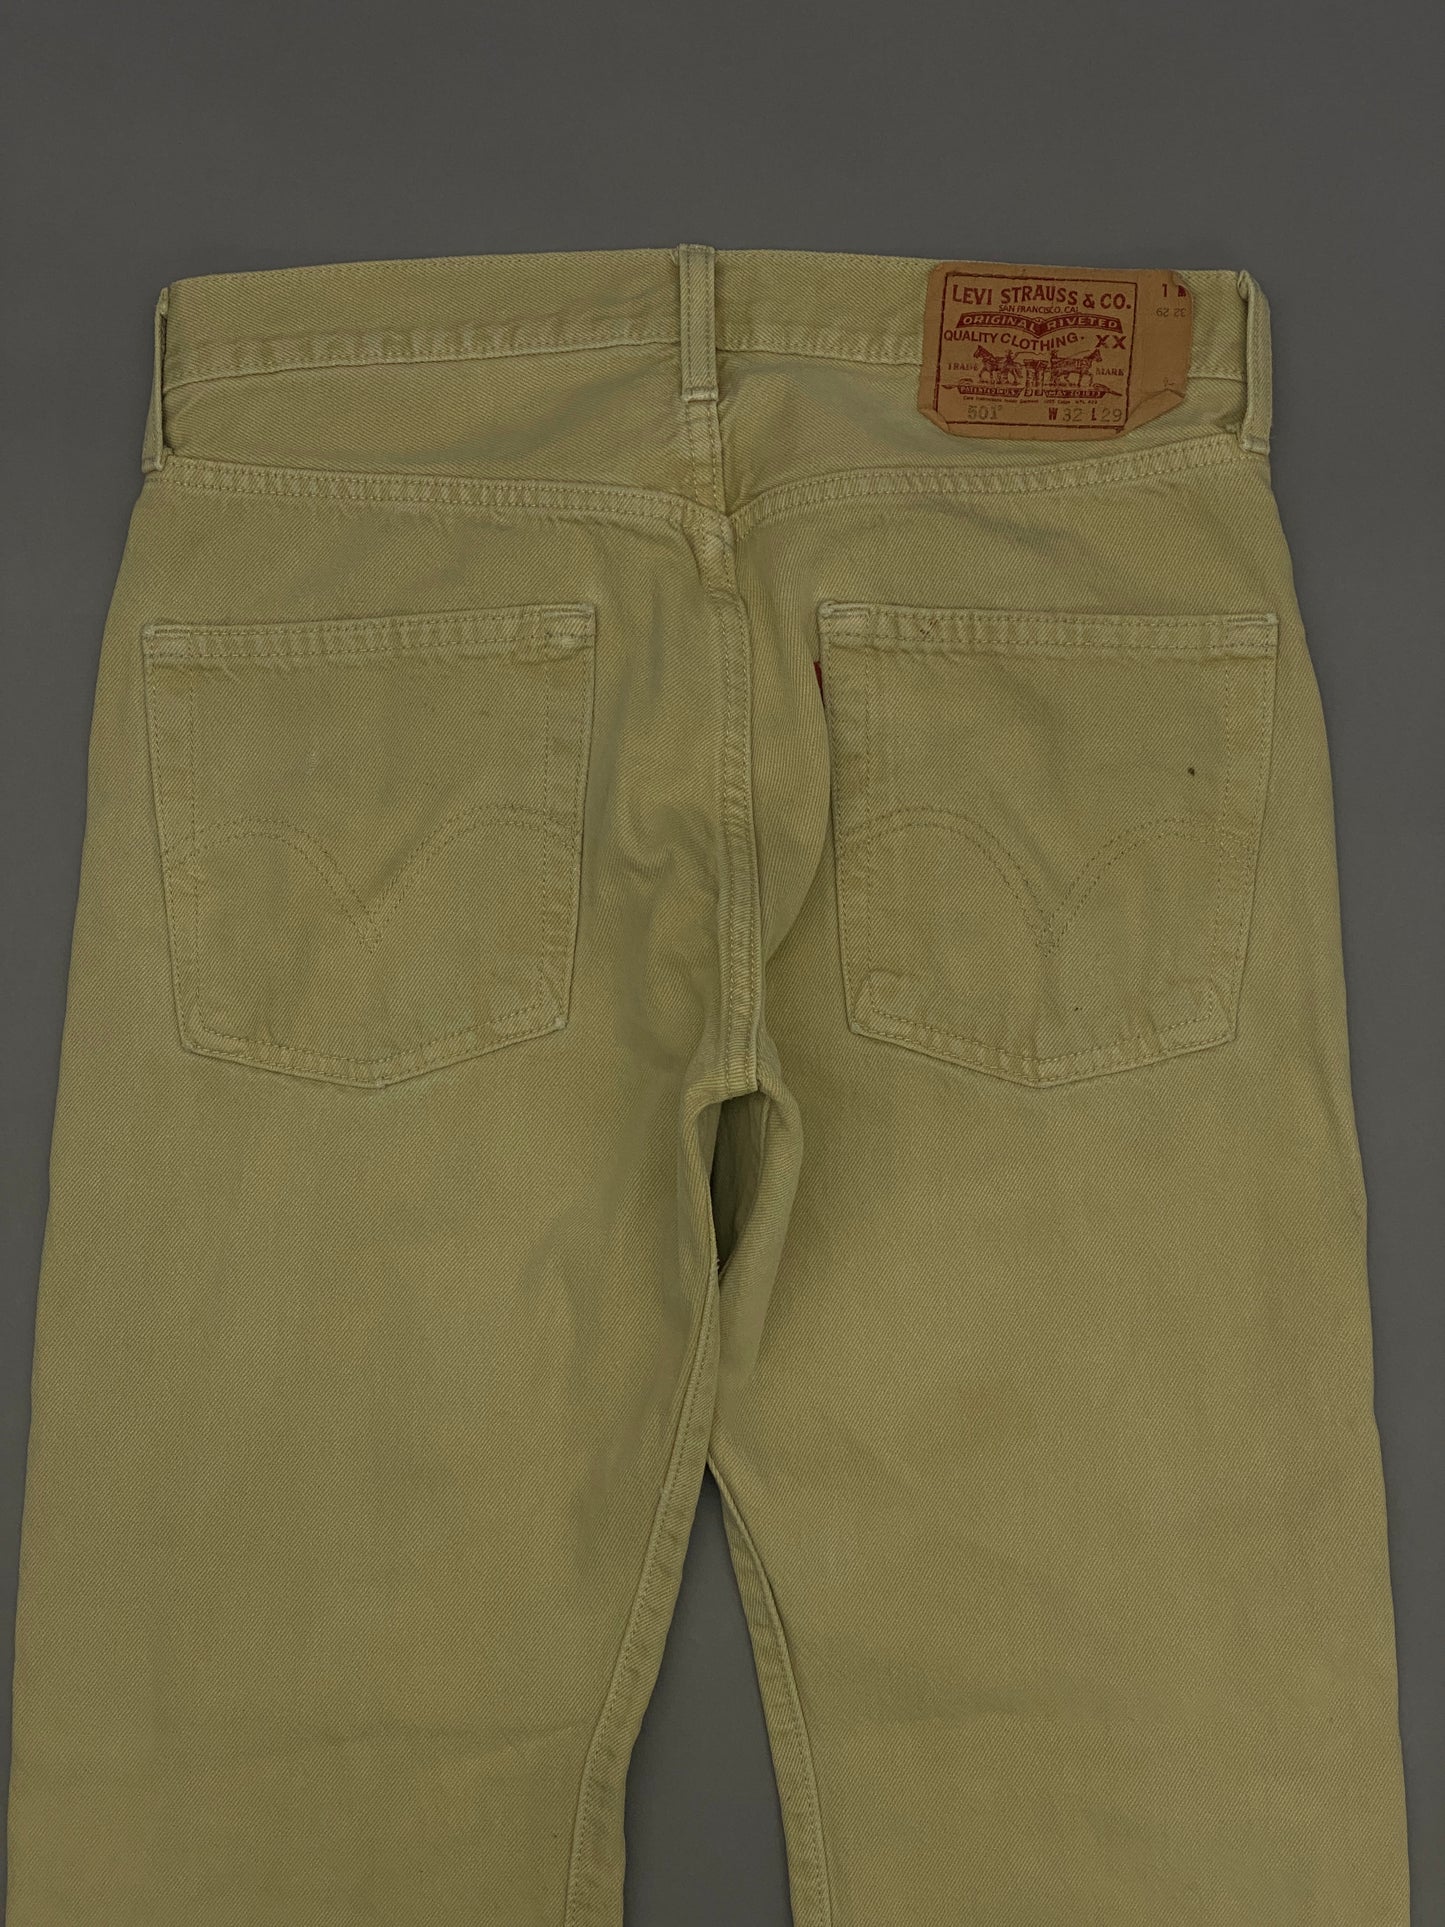 Levis 501 Vintage Jeans - 32x29